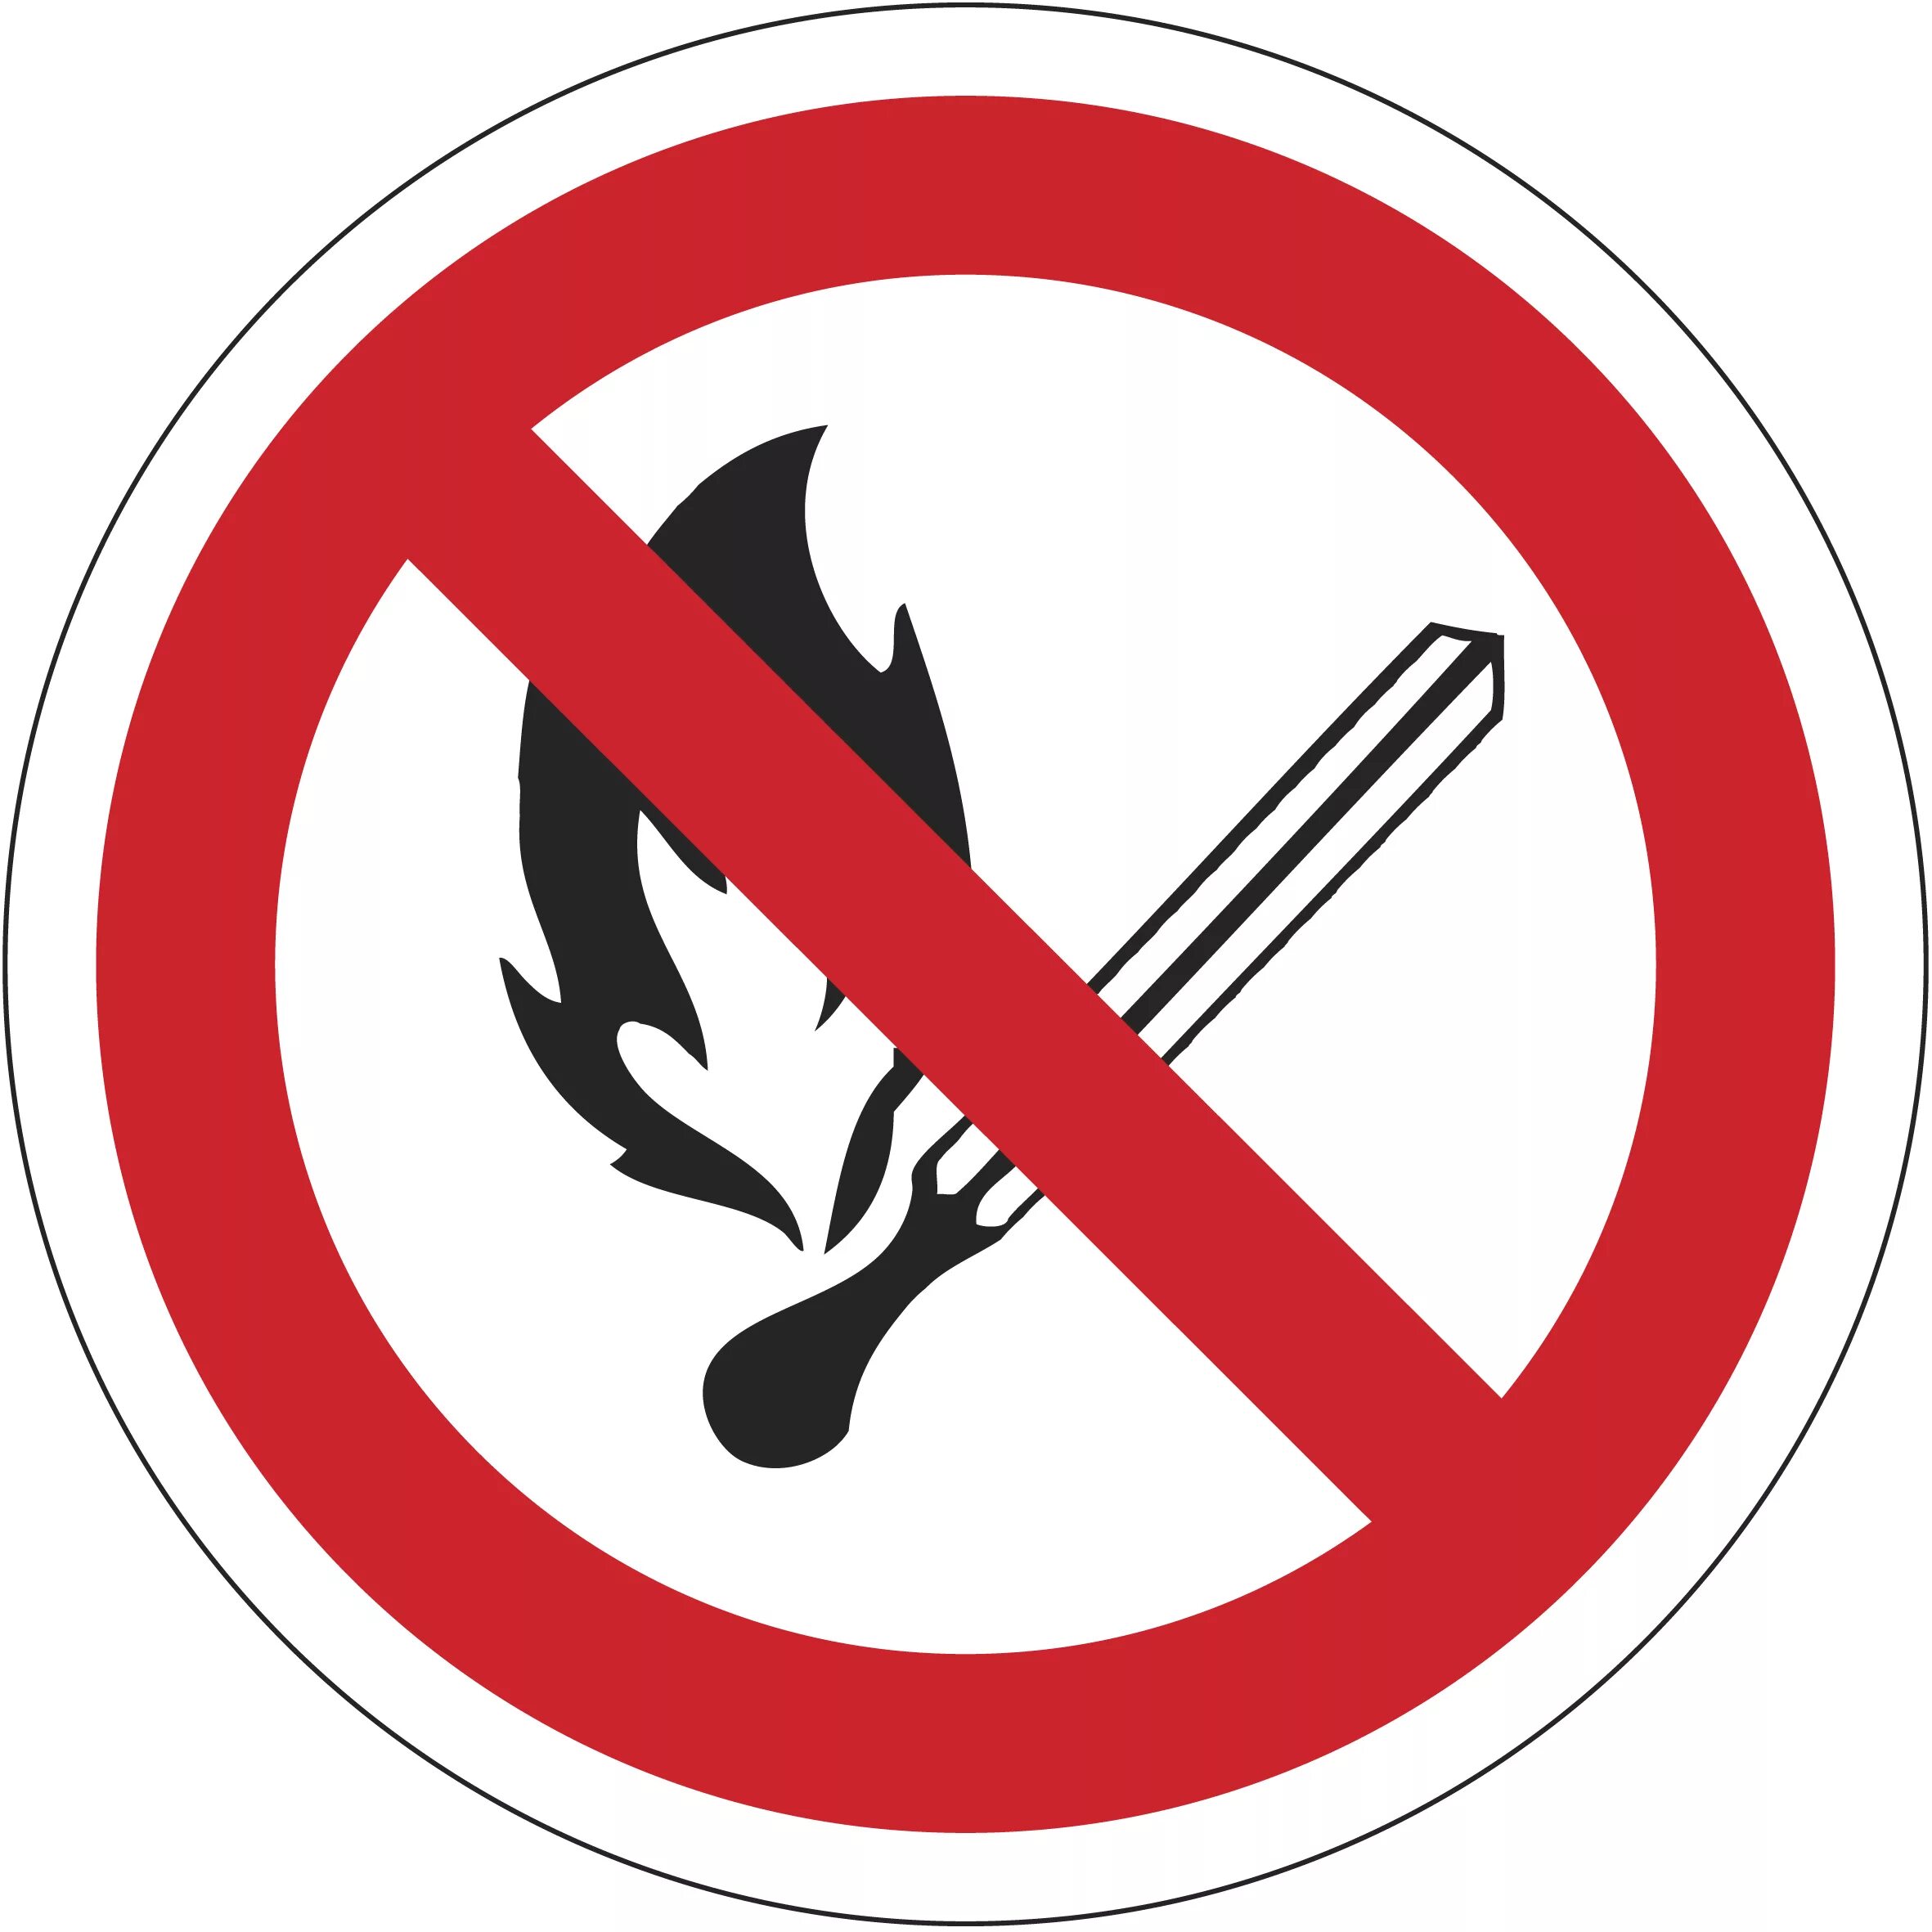 Нельзя гнать. Запрещается пользоваться открытым огнем и курить р02. Запрещающие противопожарные знаки. Пожарный знак "запрещающий". Запретный знак.